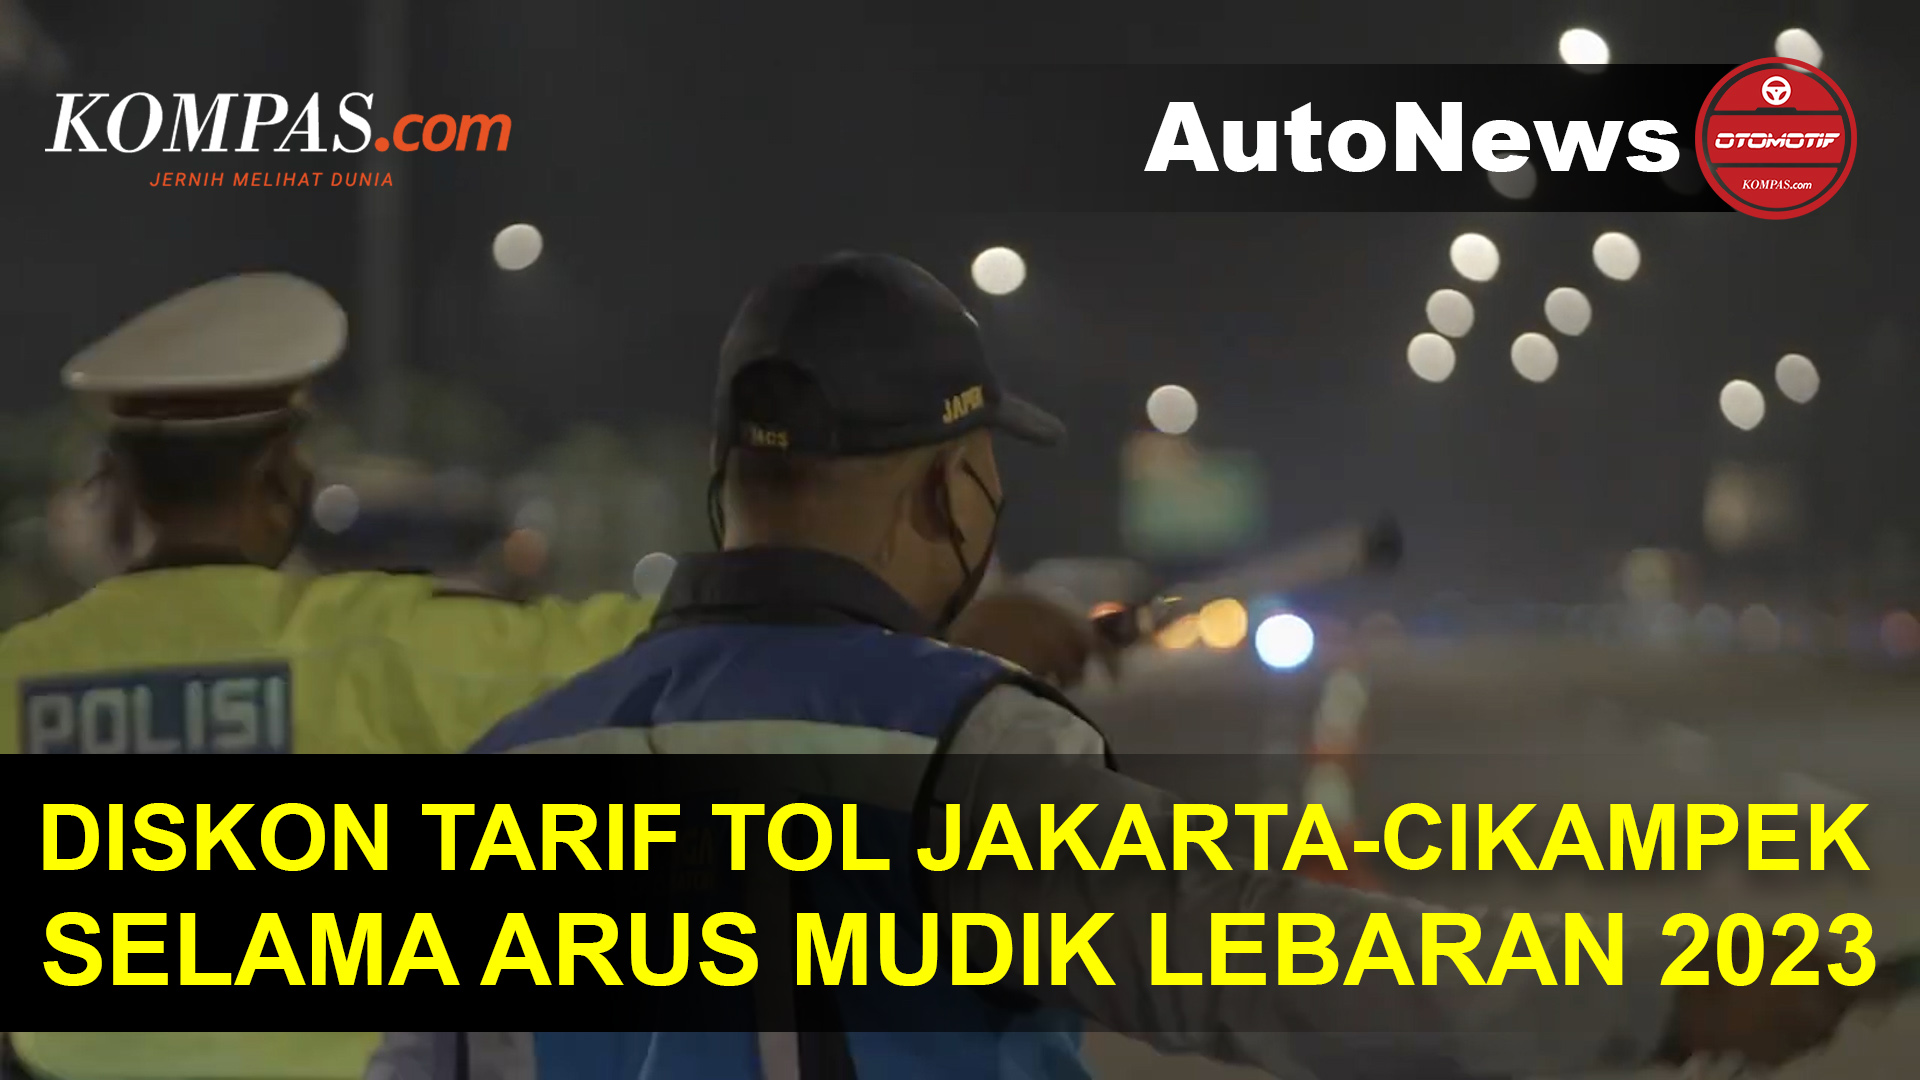 Catat, Ini Periode Diskon Tarif Tol Jakarta-Cikampek Saat Mudik